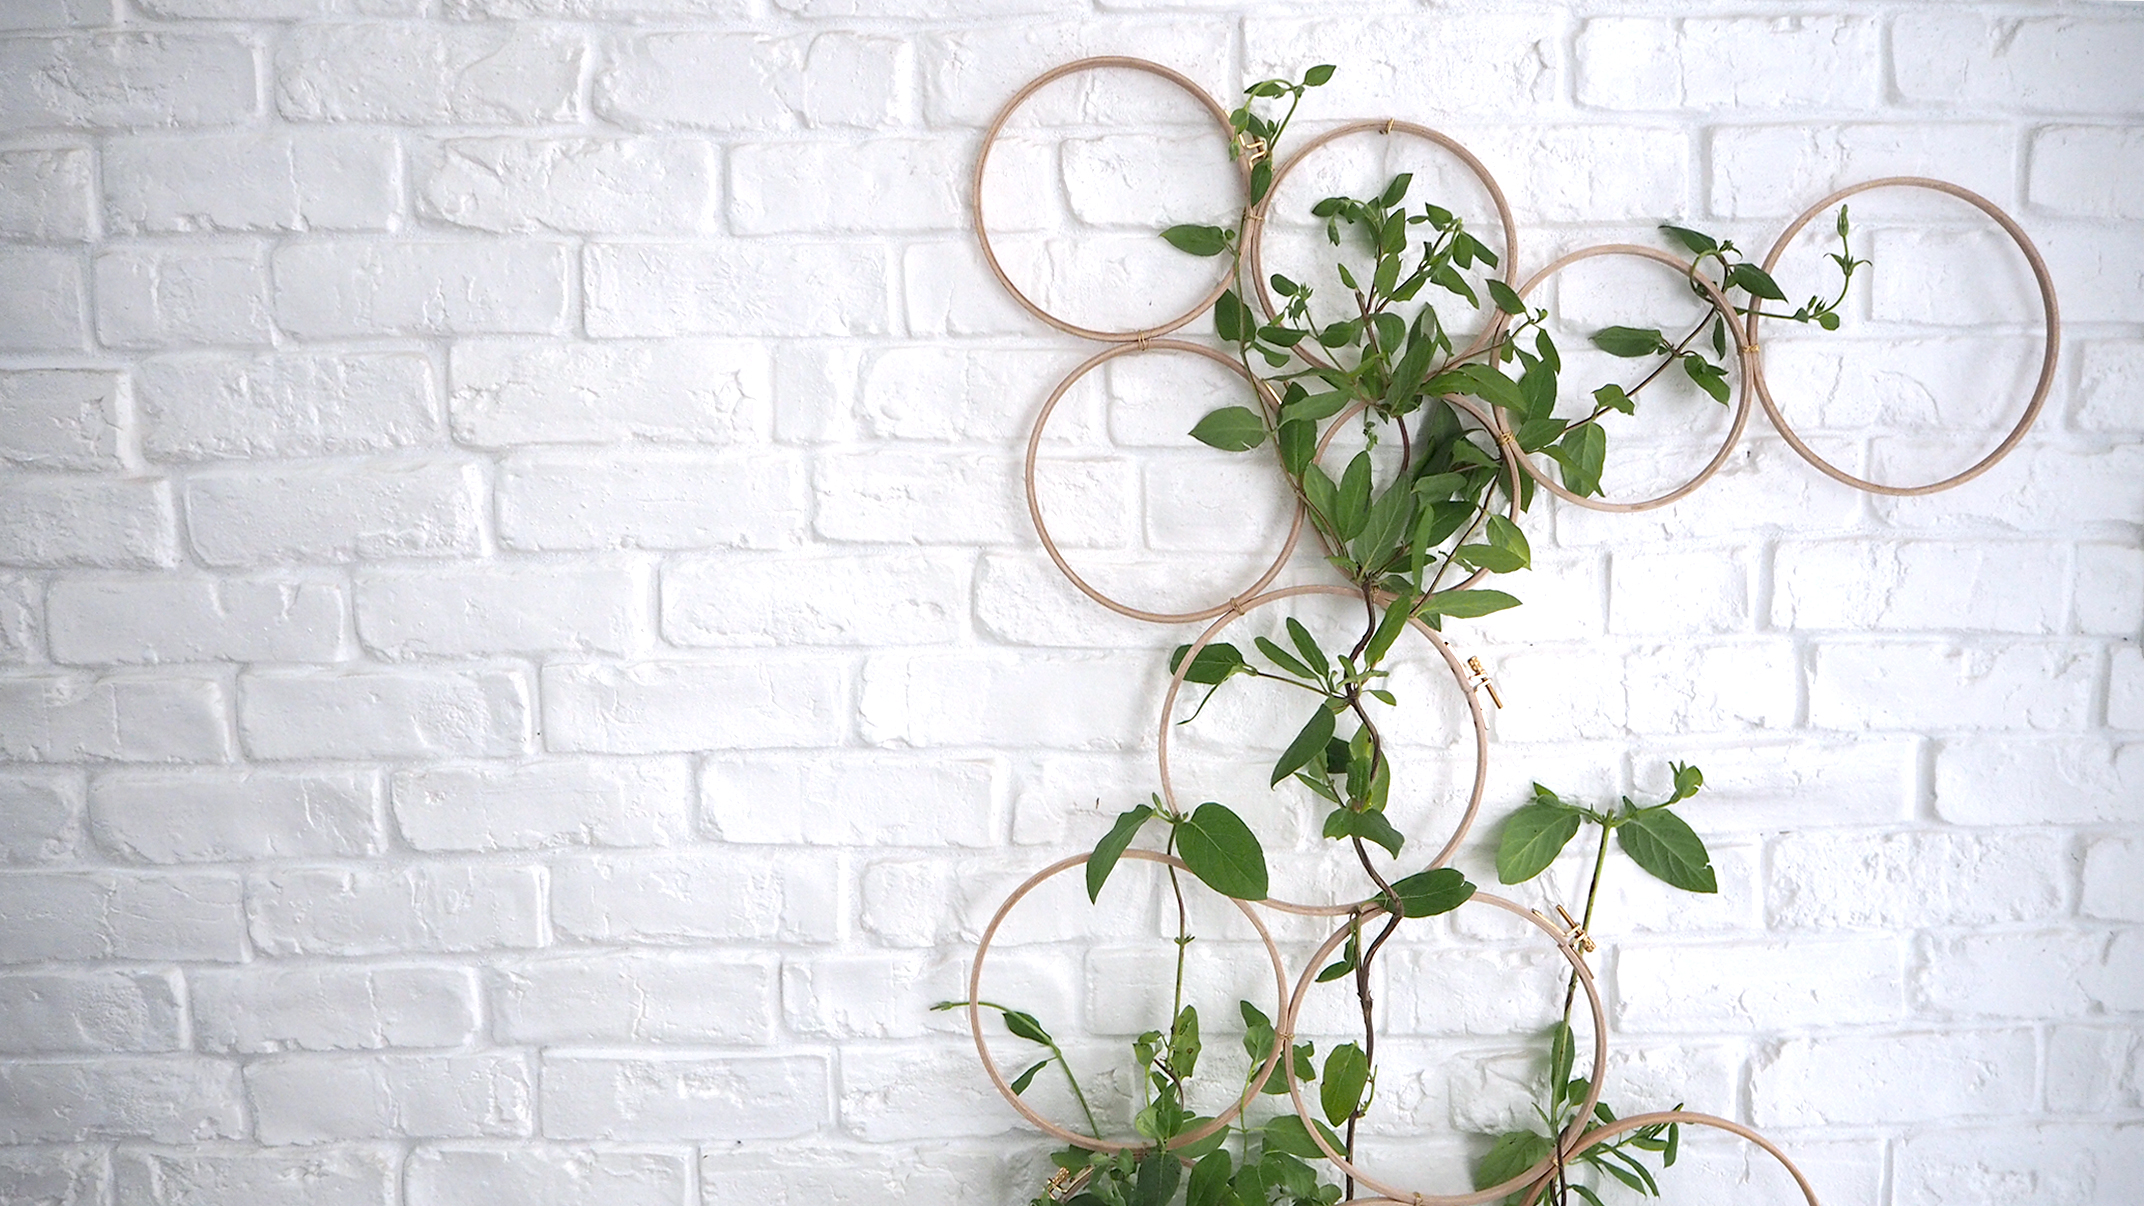 DIY mur végétal : comment le faire soi même - Marie Claire